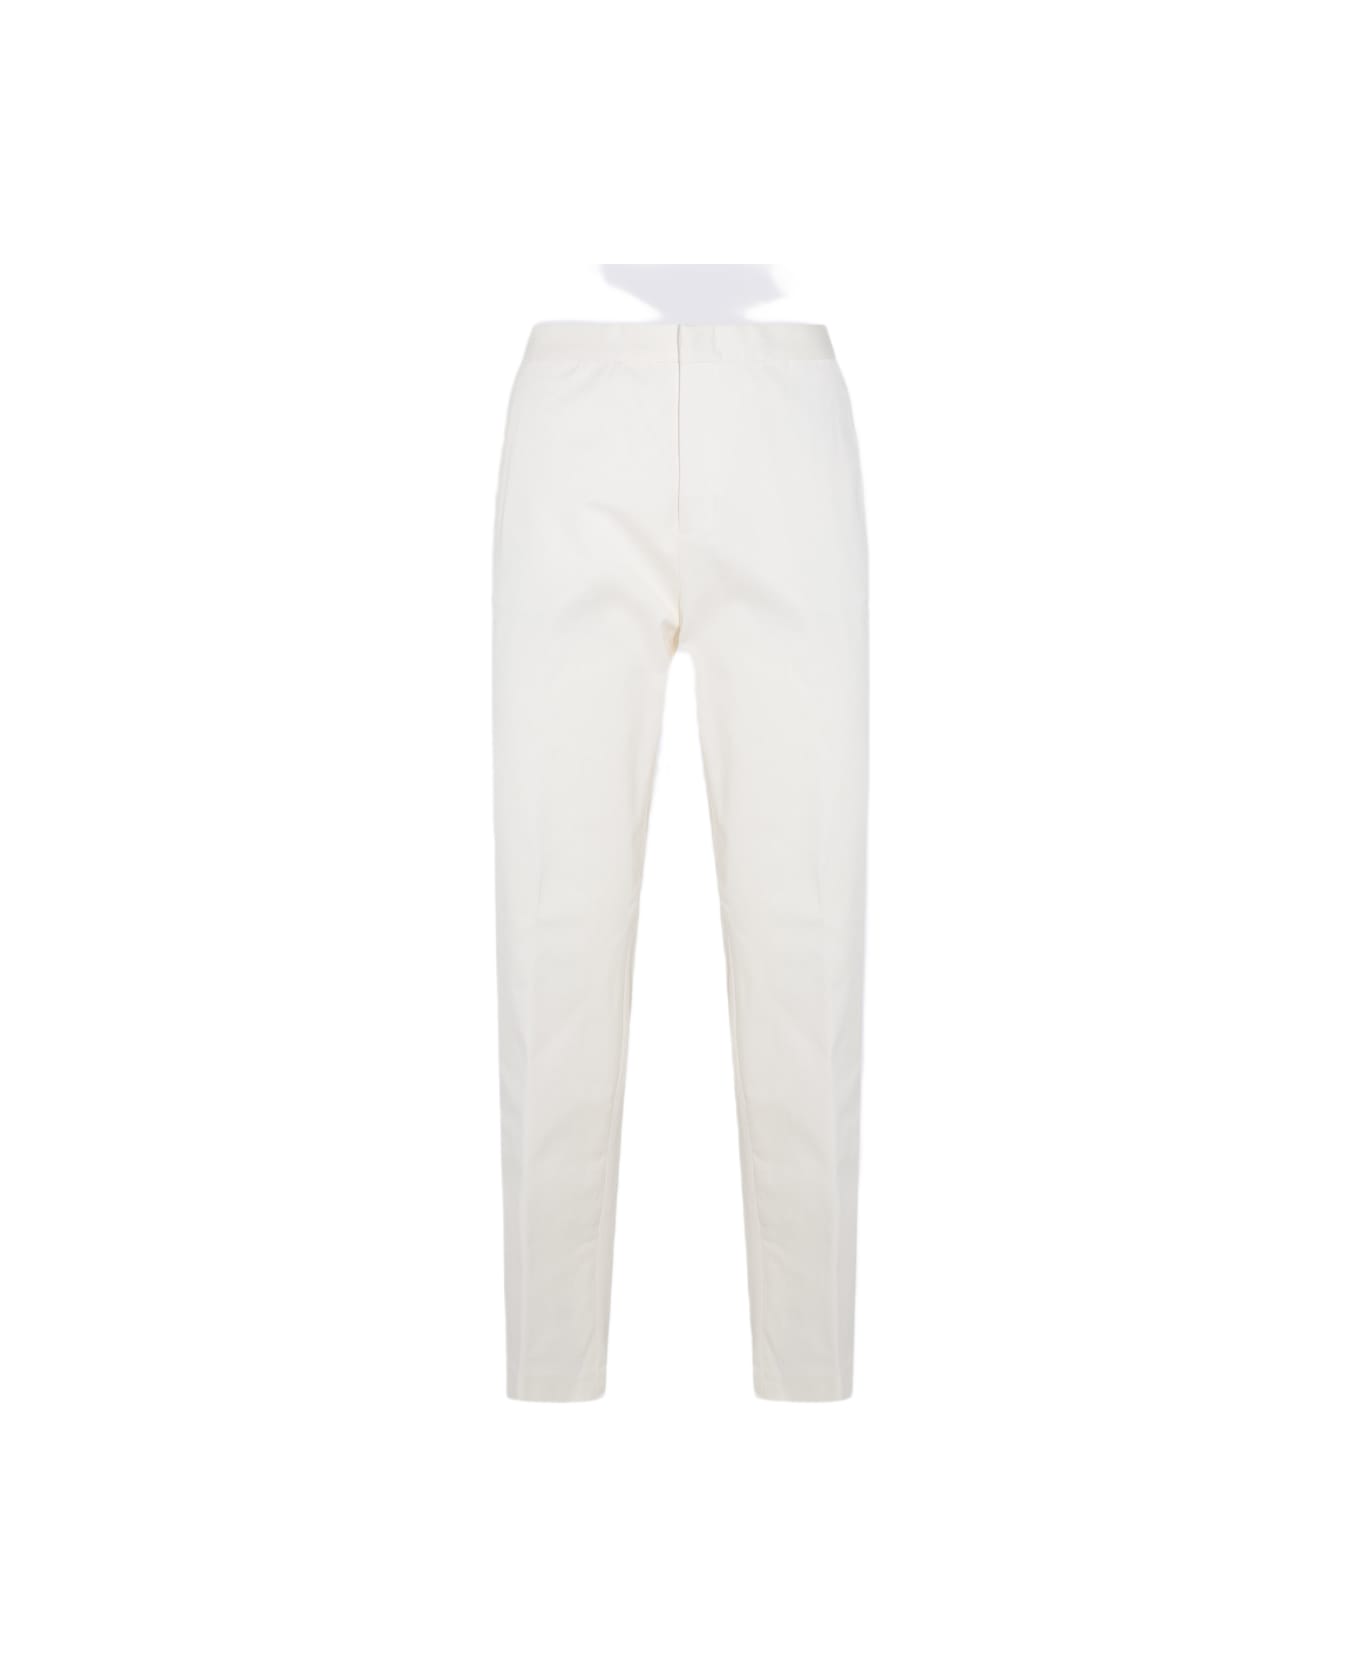 Fabiana Filippi White Cotton Pants - White ボトムス